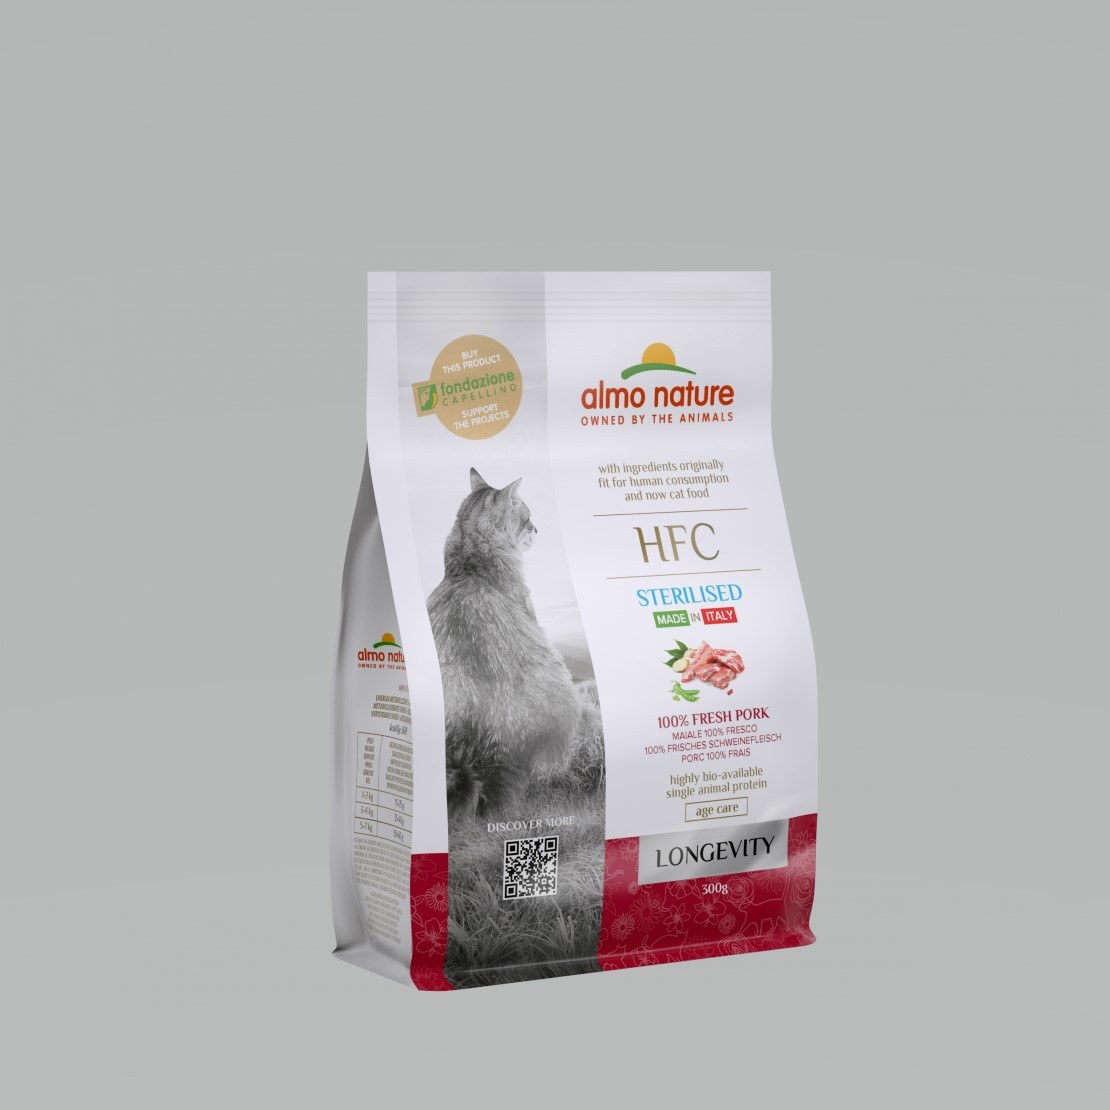 Almo Hfc Longevity Sterilized Cat Dry Food with 100% Pork